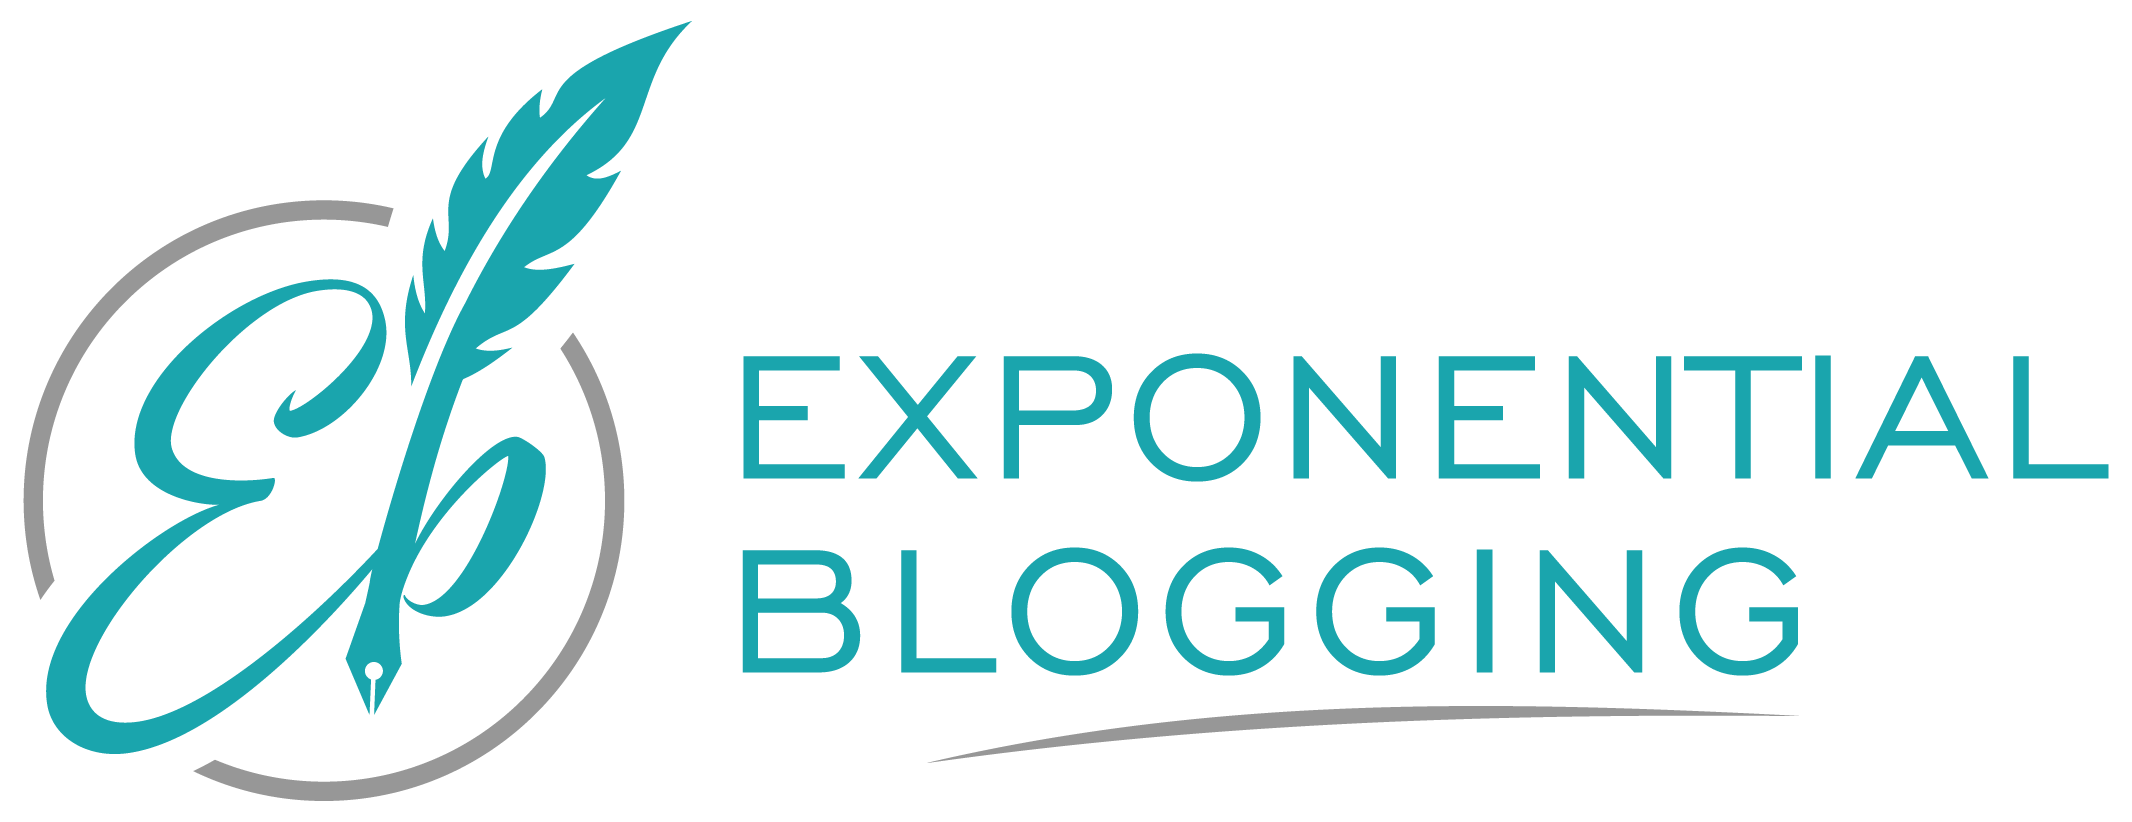 Exponential Blogging